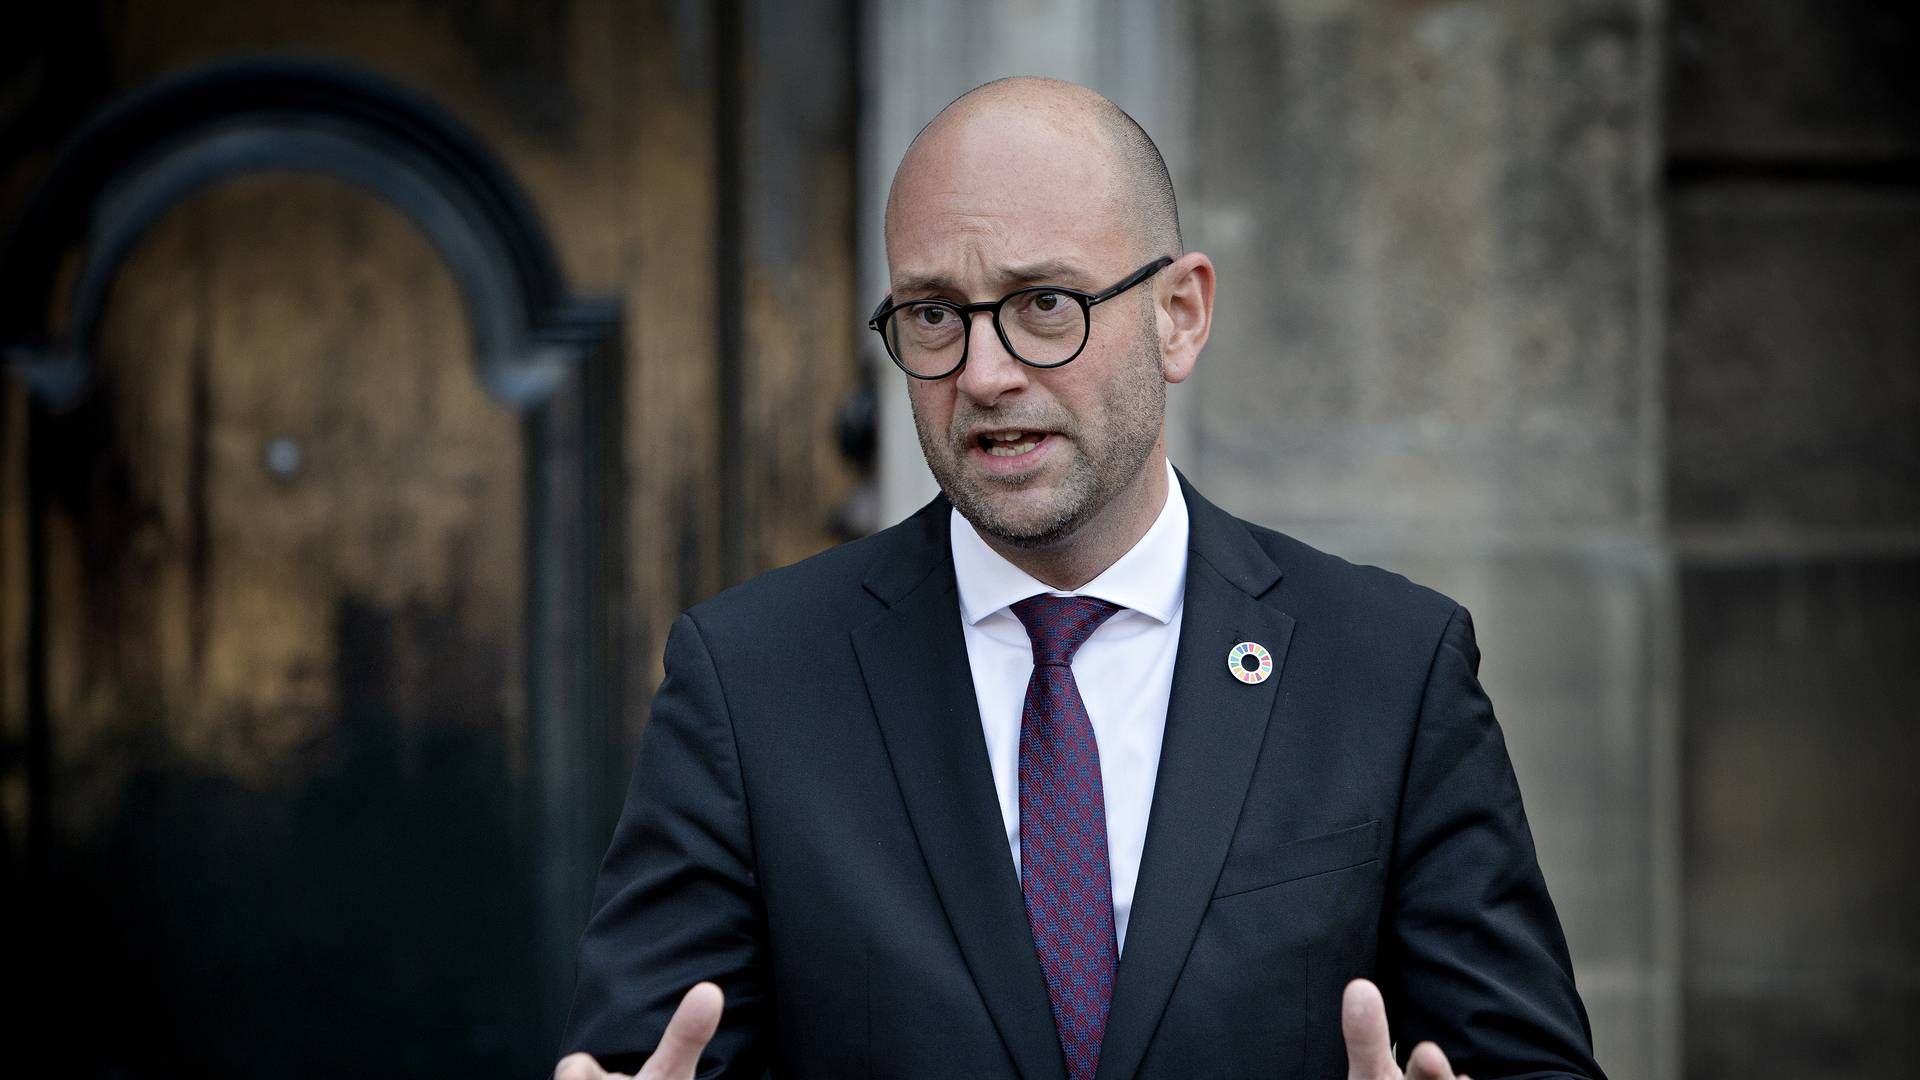 Fødevare- og landbrugsminister Rasmus Prehn. | Foto: Martin Lehmann/Politiken